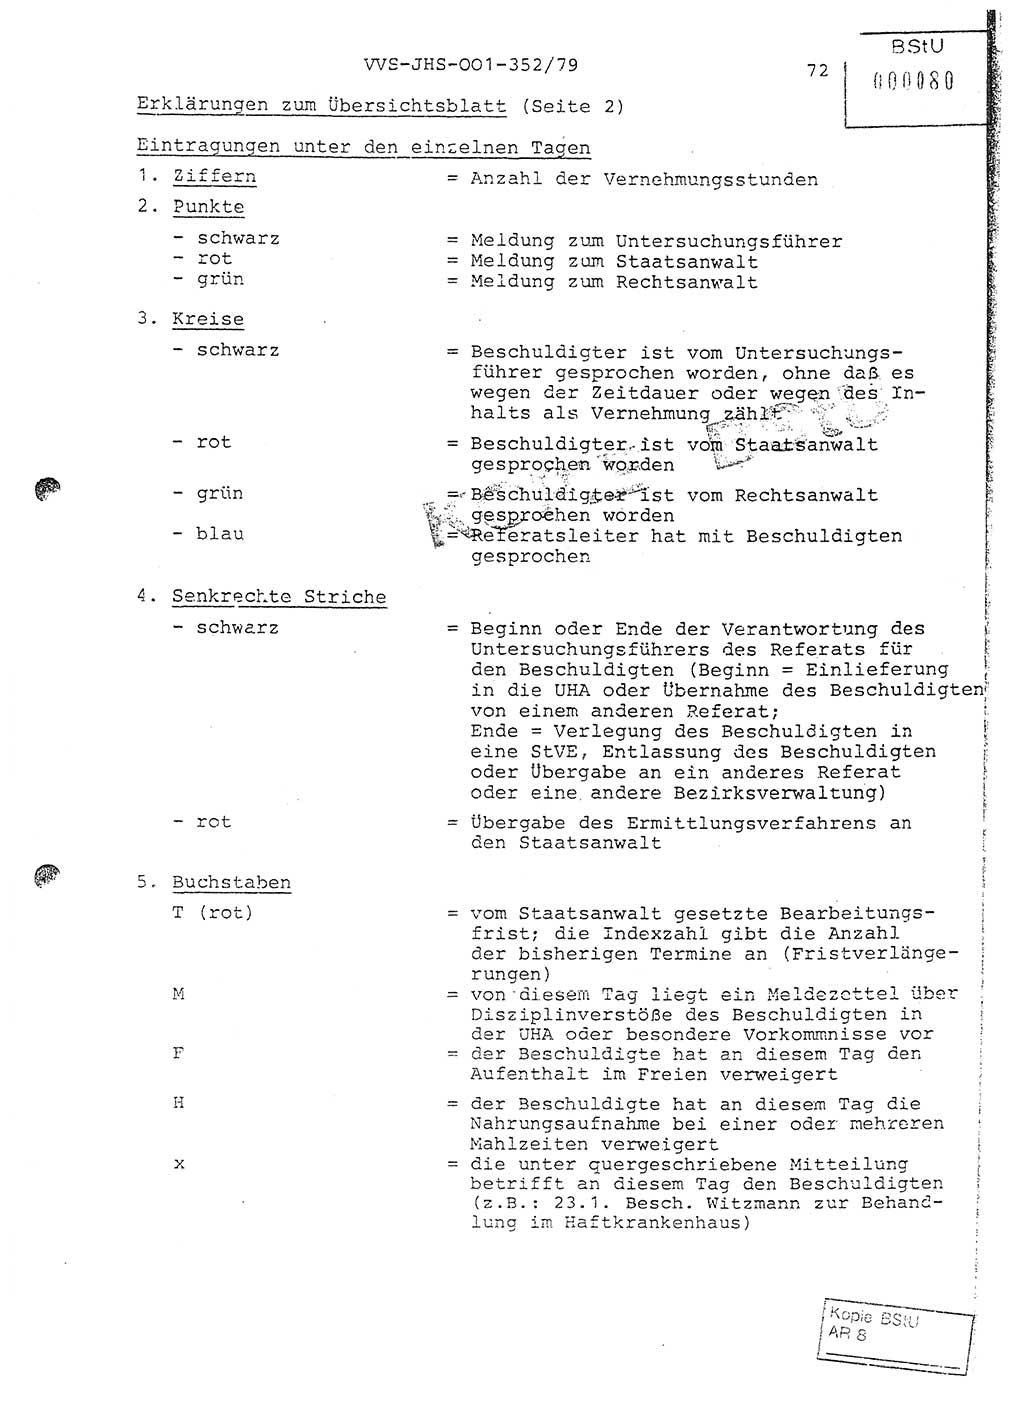 Diplomarbeit Hauptmann Peter Wittum (BV Bln. Abt. HA Ⅸ), Ministerium für Staatssicherheit (MfS) [Deutsche Demokratische Republik (DDR)], Juristische Hochschule (JHS), Vertrauliche Verschlußsache (VVS) o001-352/79, Potsdam 1979, Seite 72 (Dipl.-Arb. MfS DDR JHS VVS o001-352/79 1979, S. 72)